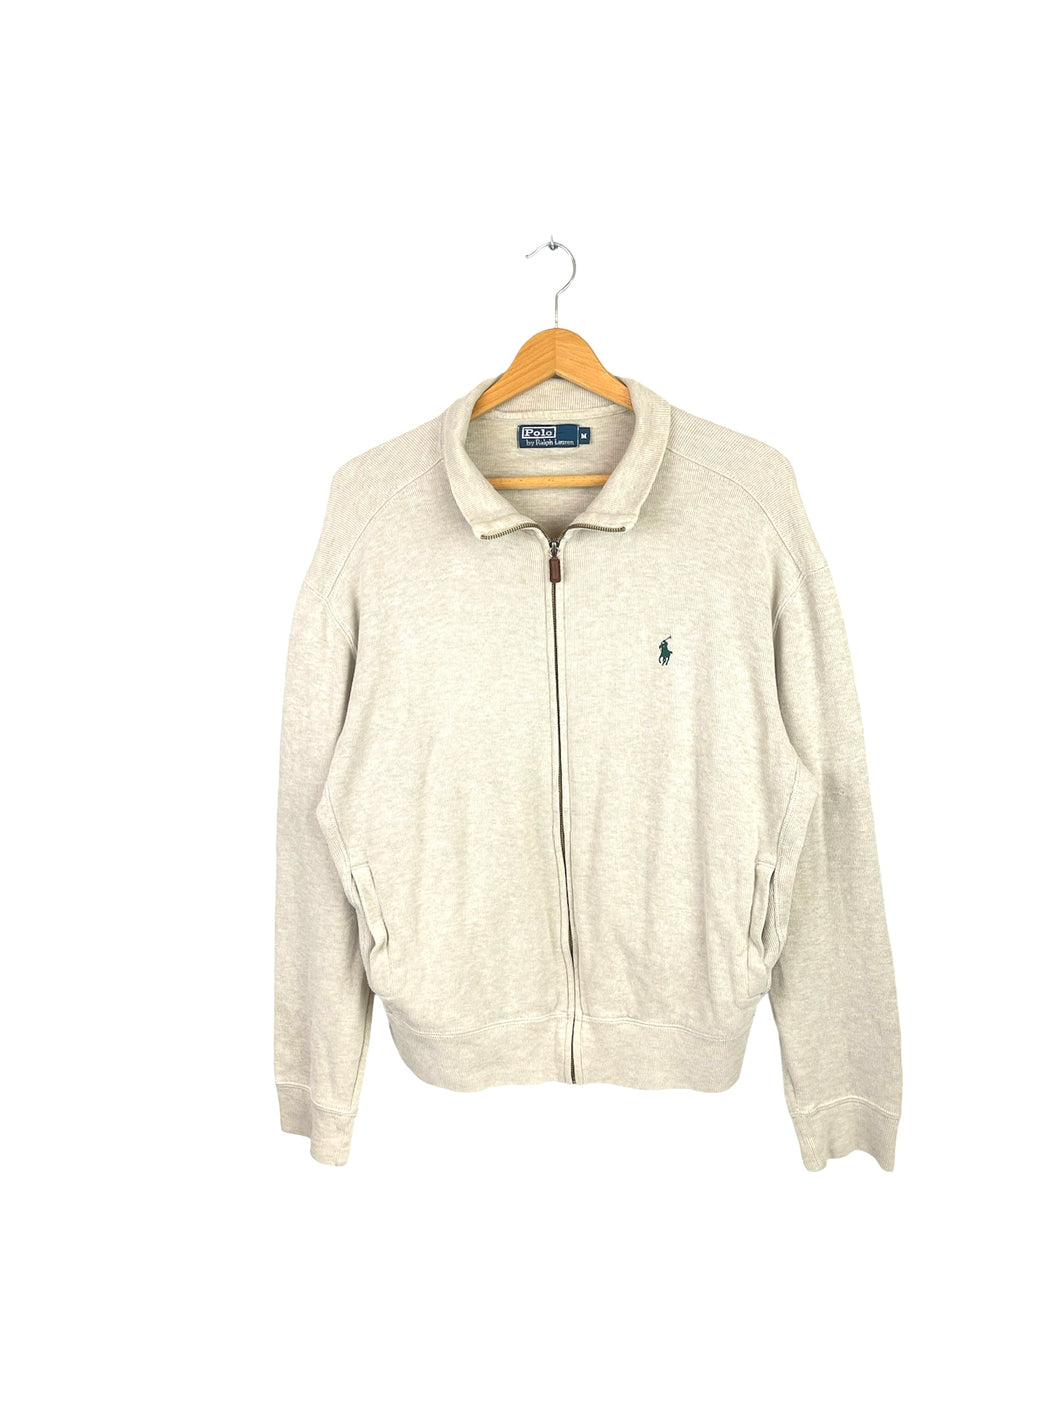 Ralph Lauren Full Zip Sweatshirt - Medium